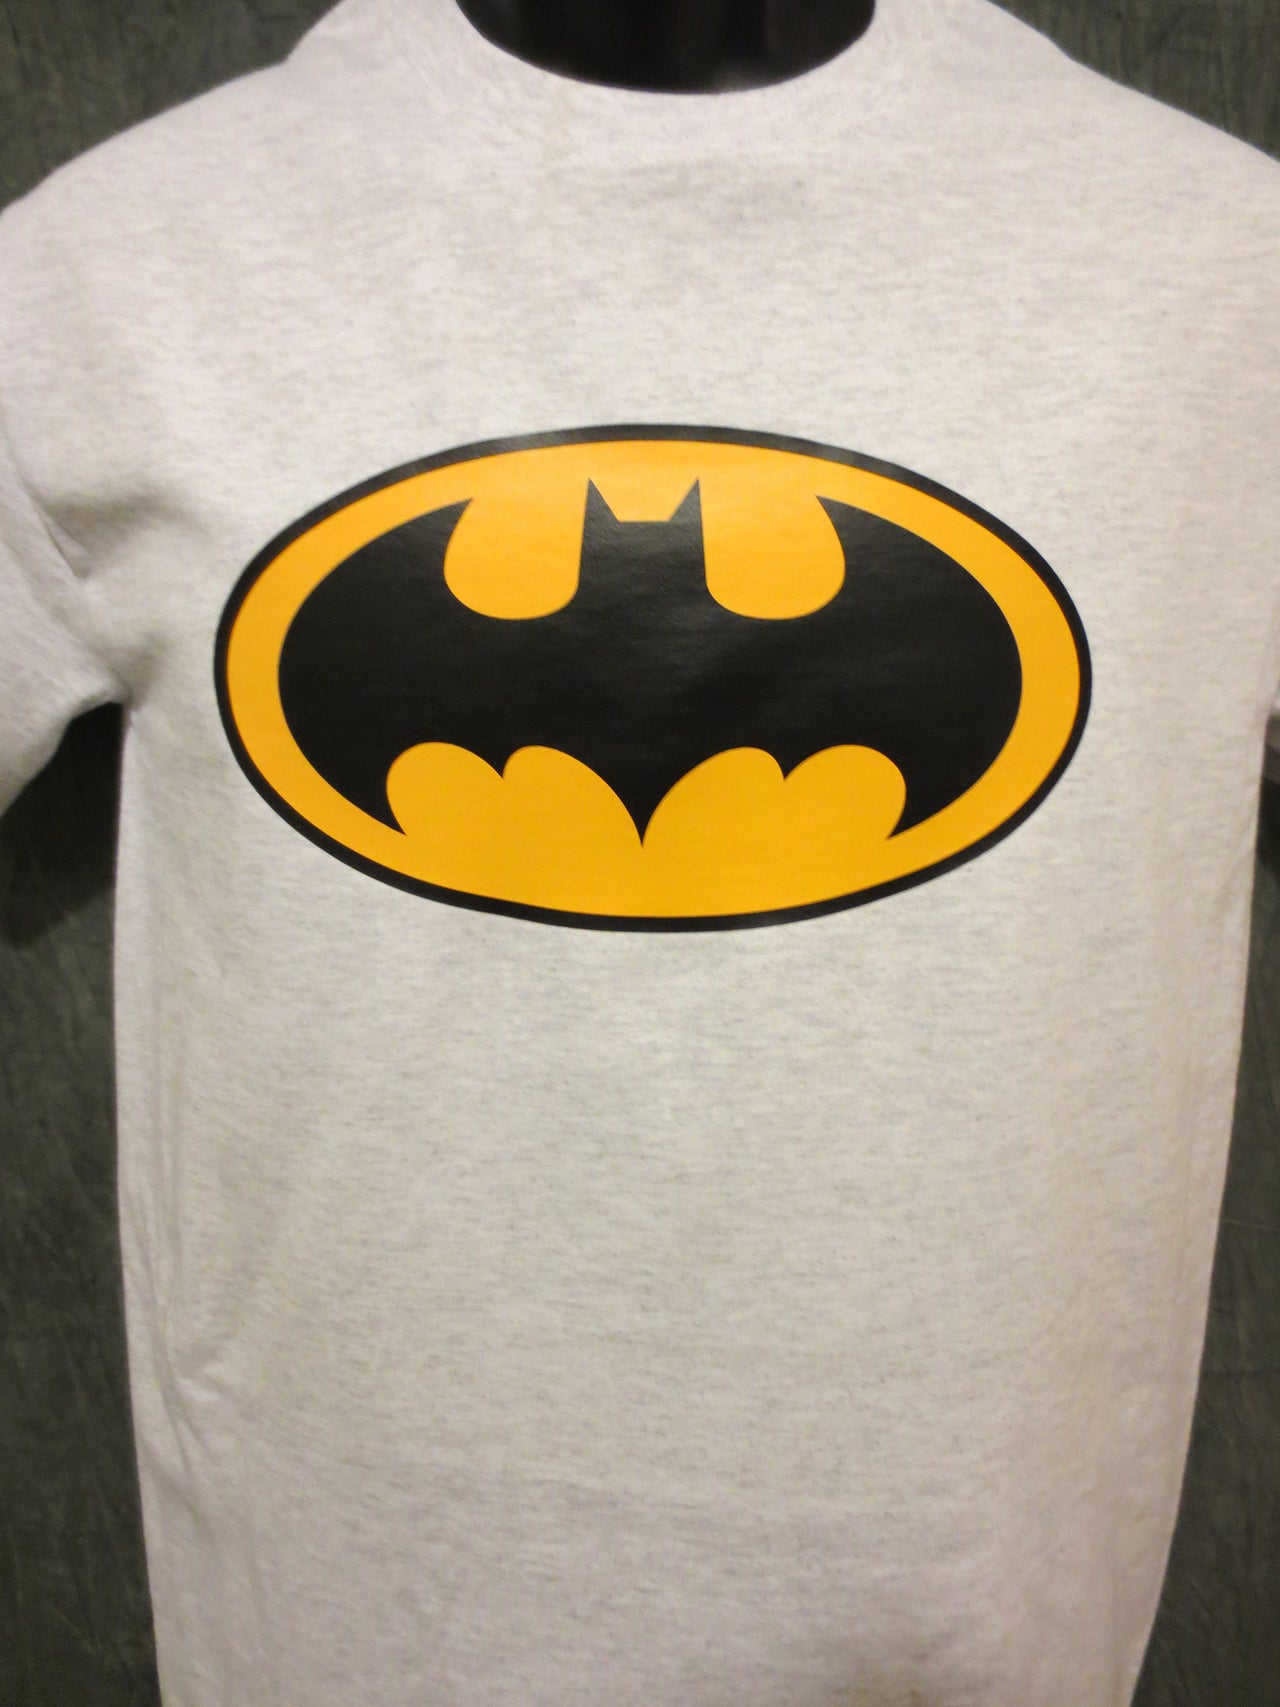 Batman Classic Logo White Tshirt - TshirtNow.net - 1